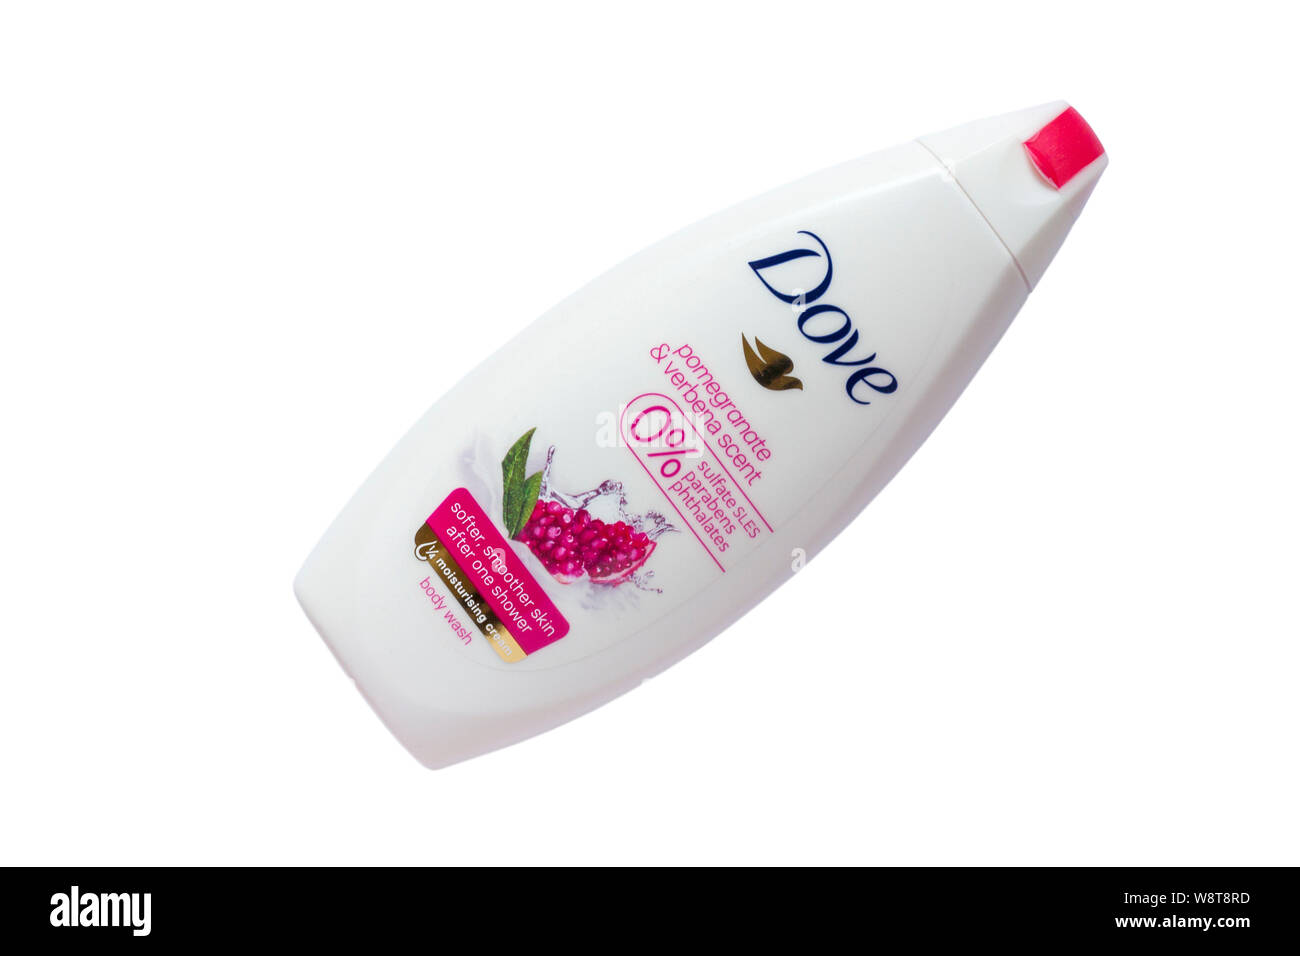 Bouteille de parfum & grenade Dove body wash shampooing crème hydratante avec 0 % parabens SLES sulfate phtalates isolé sur fond blanc Banque D'Images